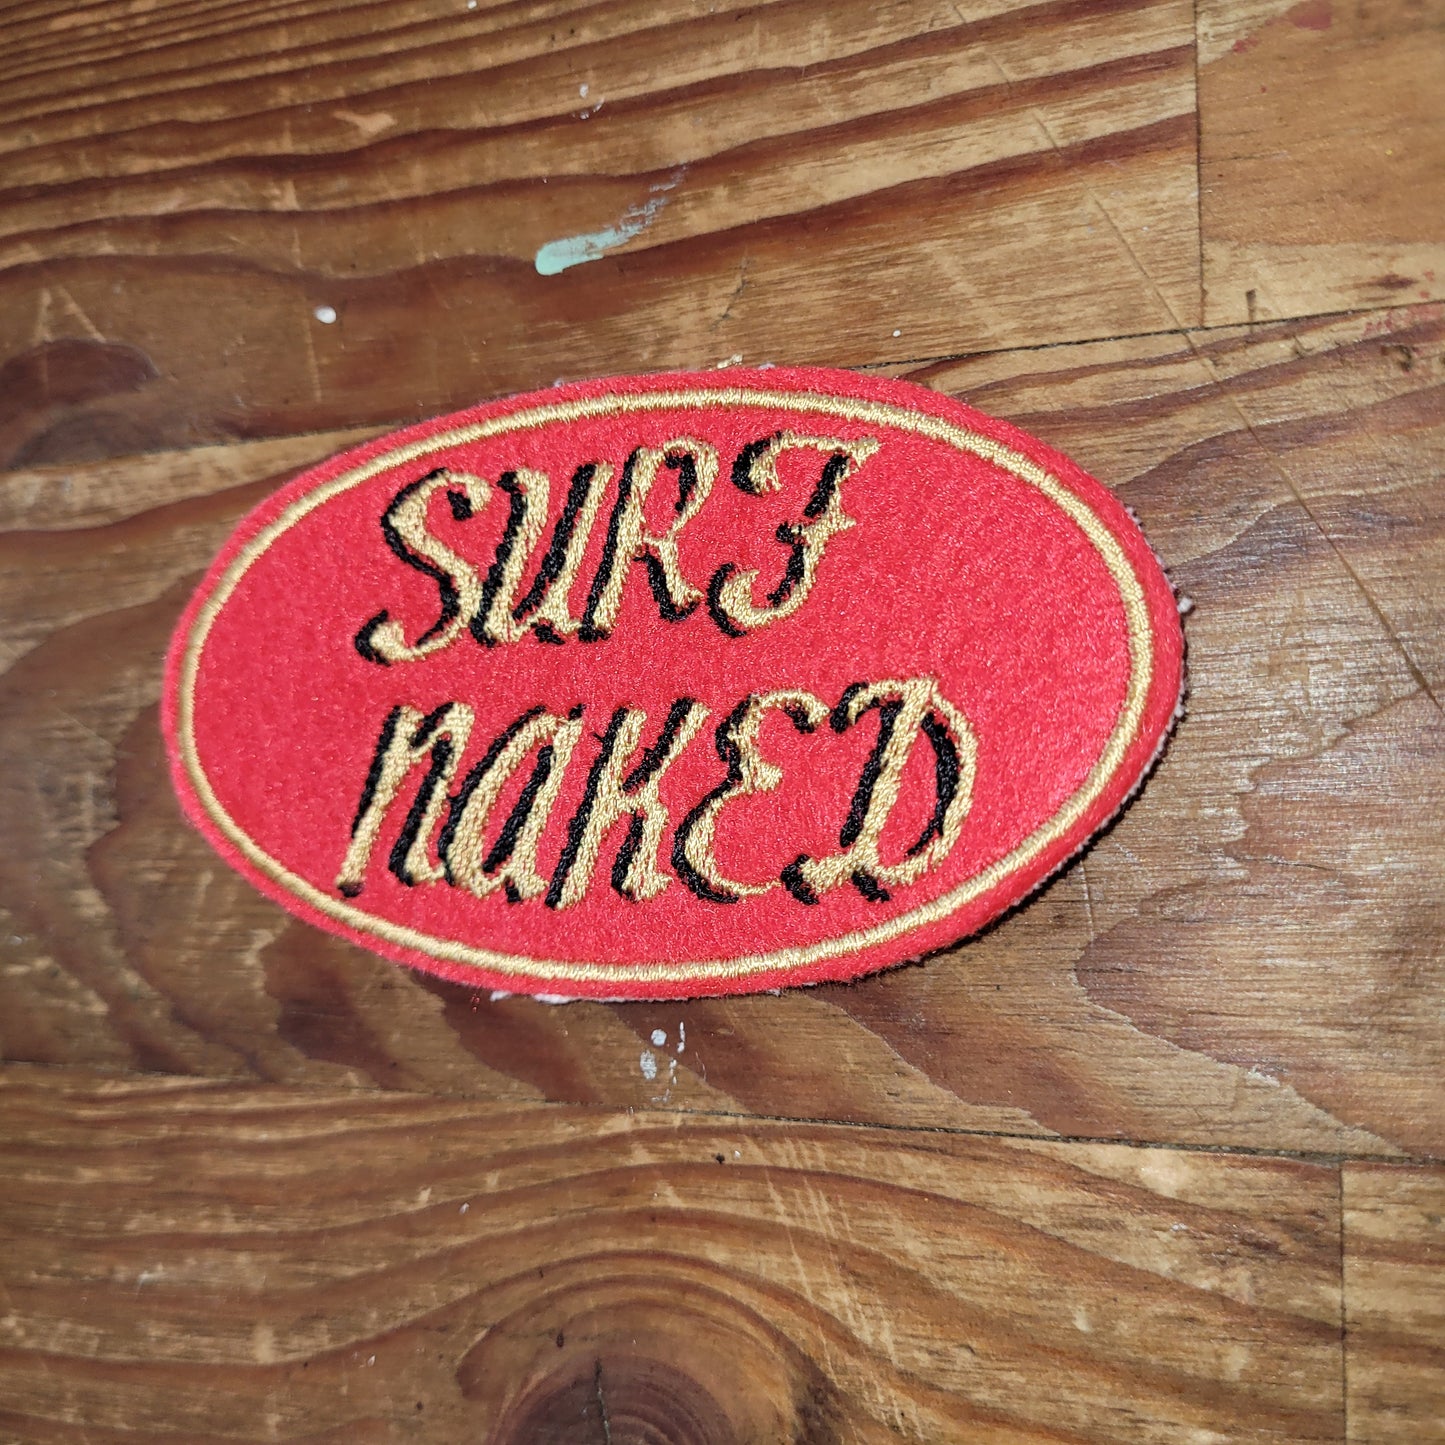 Surf Naked